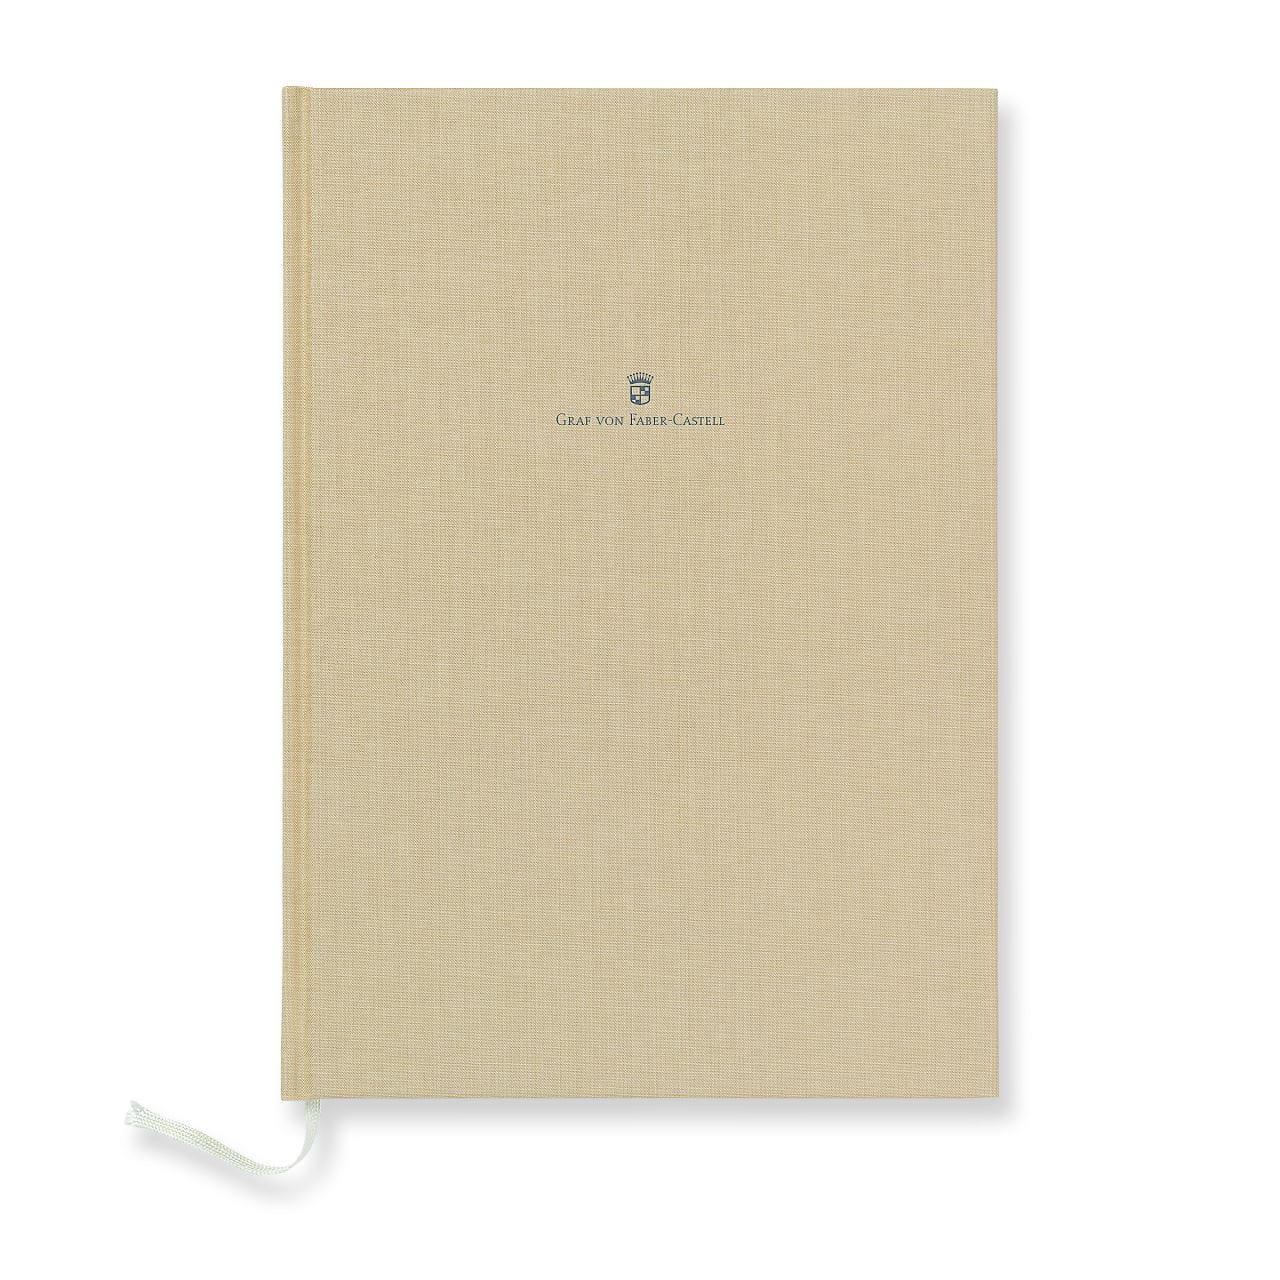 Graf-von-Faber-Castell - Book con copertina in lino A4 Sabbia